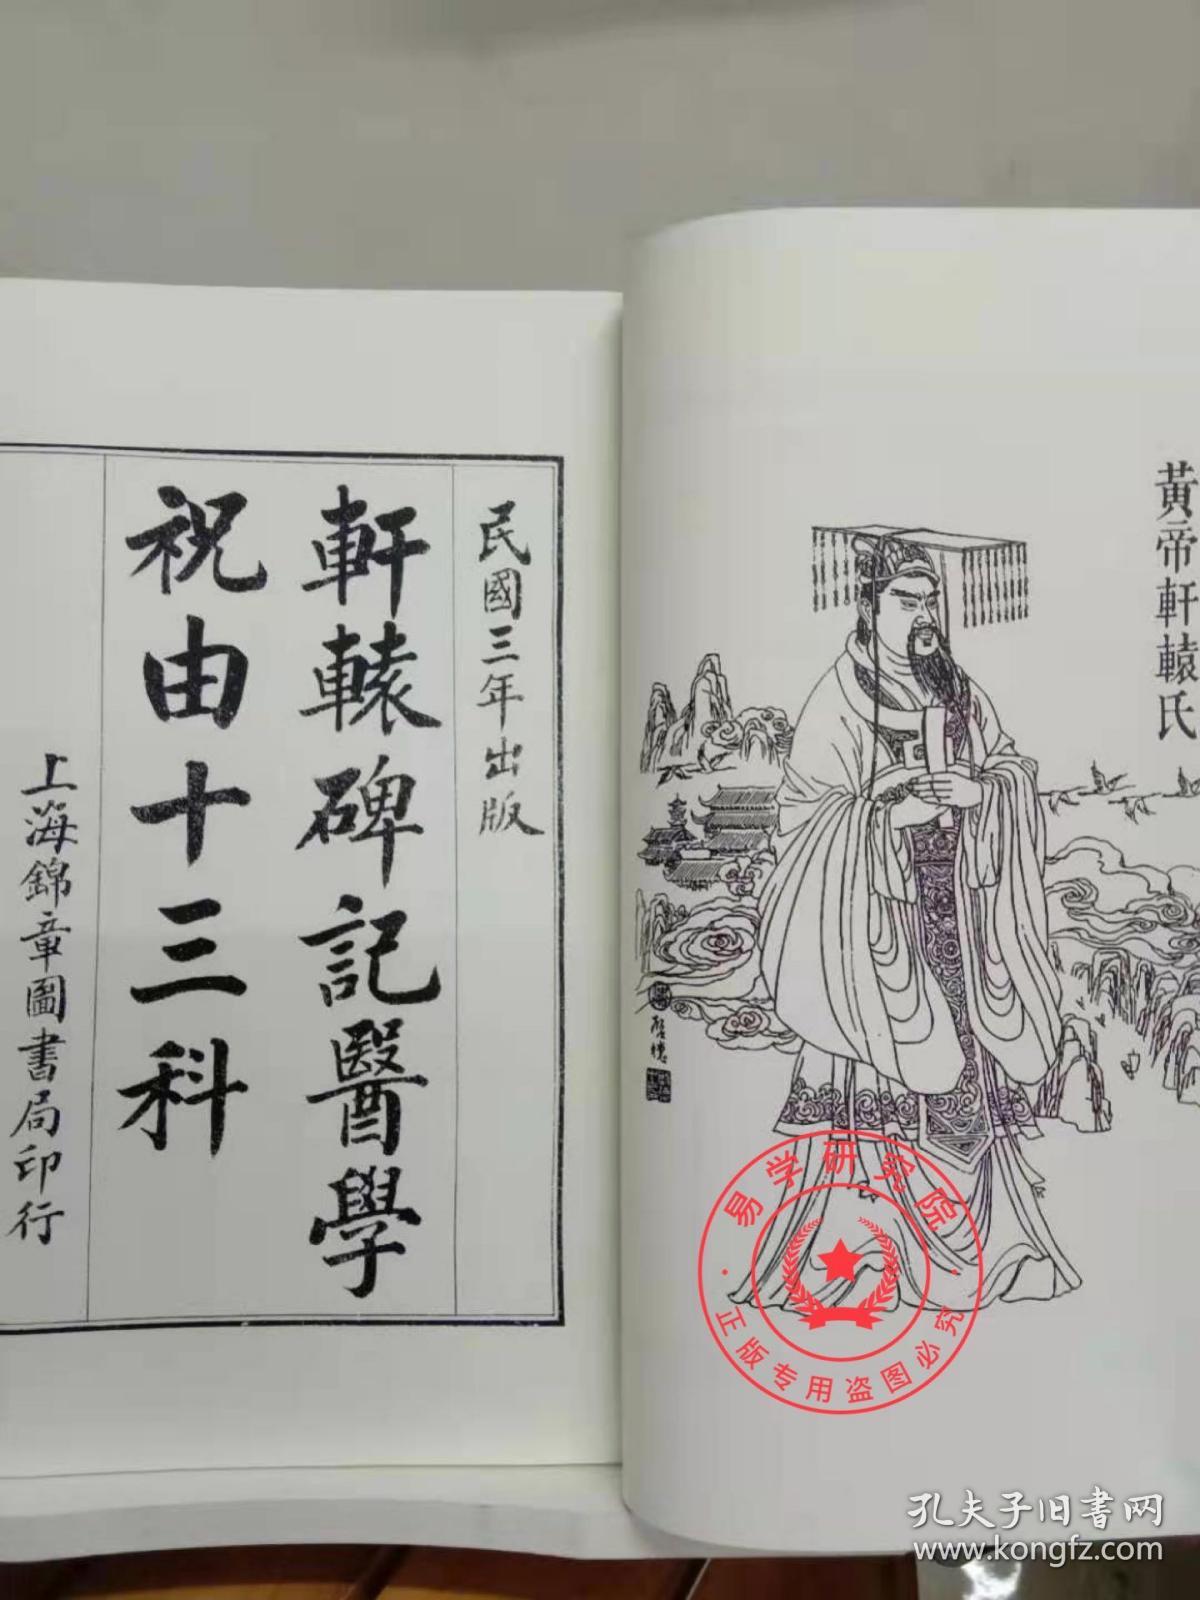 正版 精装 祝由十三科 轩辕碑记医学 民国三年出版 古籍善本 正版精装